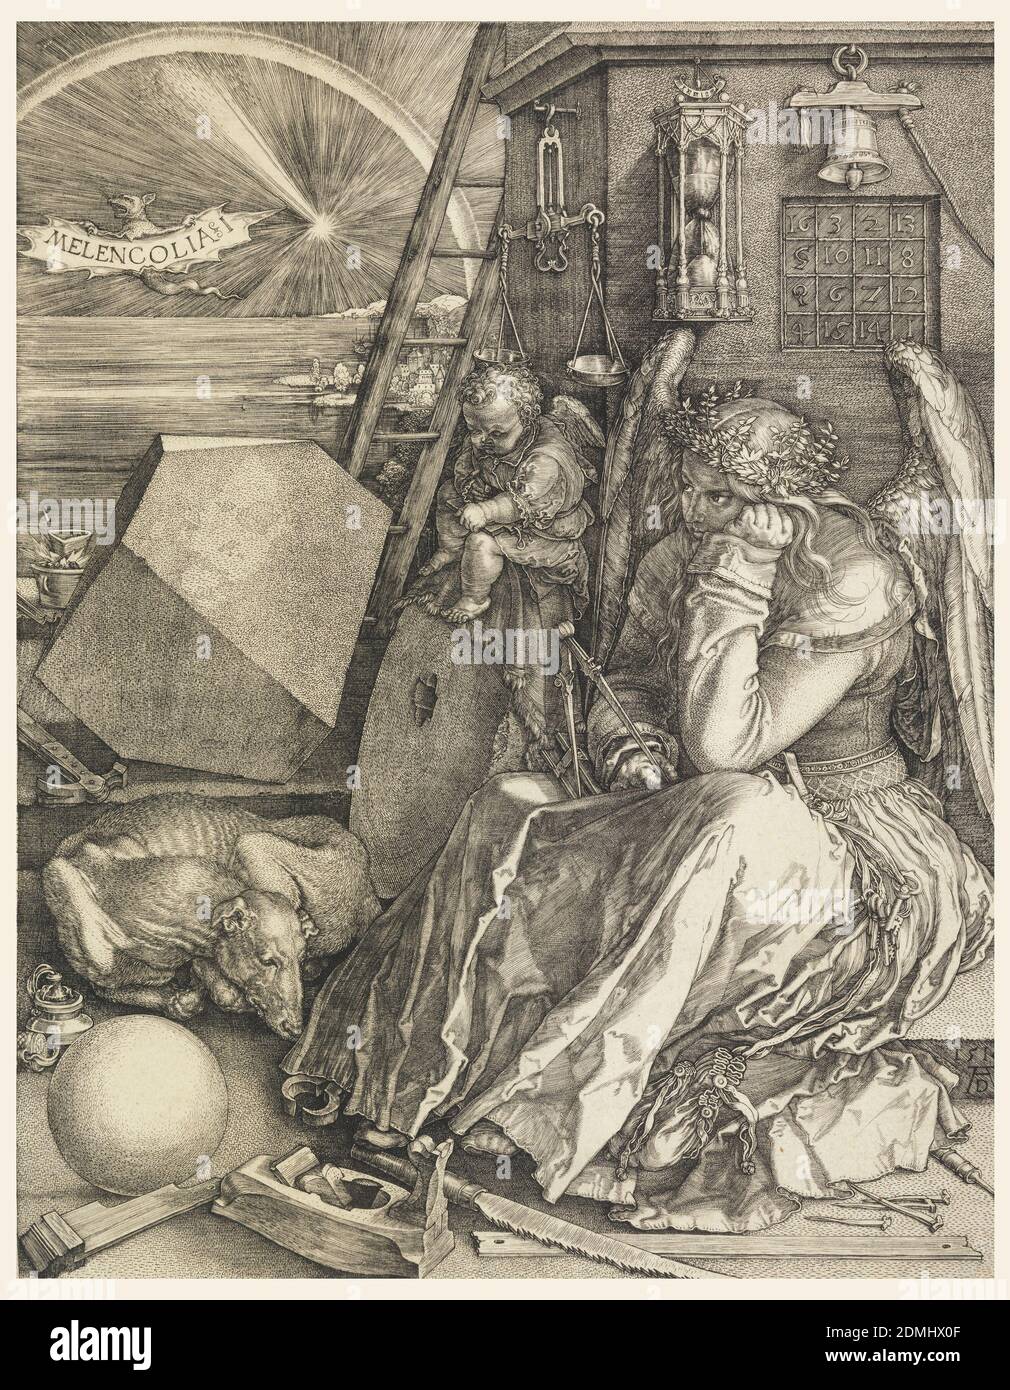 Melencolia i, Albrecht Dürer, tedesco, 1471–1528, incisione su carta bianca, la figura alata di una donna, vestita da un lungo abito, è seduta a destra; appoggia la testa sulla mano sinistra e tiene una bussola sulla destra. Un genio alato è seduto accanto a lei, scrivendo su un tablet. Dietro di loro c'è una torre quadrata che mostra una scala, una clessidra, una campana e una piazza magica. Il primo piano è disseminato di vari strumenti legati alla carpenteria e alla costruzione: Una sega, un aereo, un martello e chiodi e lunghezze di legno. A sinistra, un cane dorme arricciato tra una sfera e un poliedro. Foto Stock